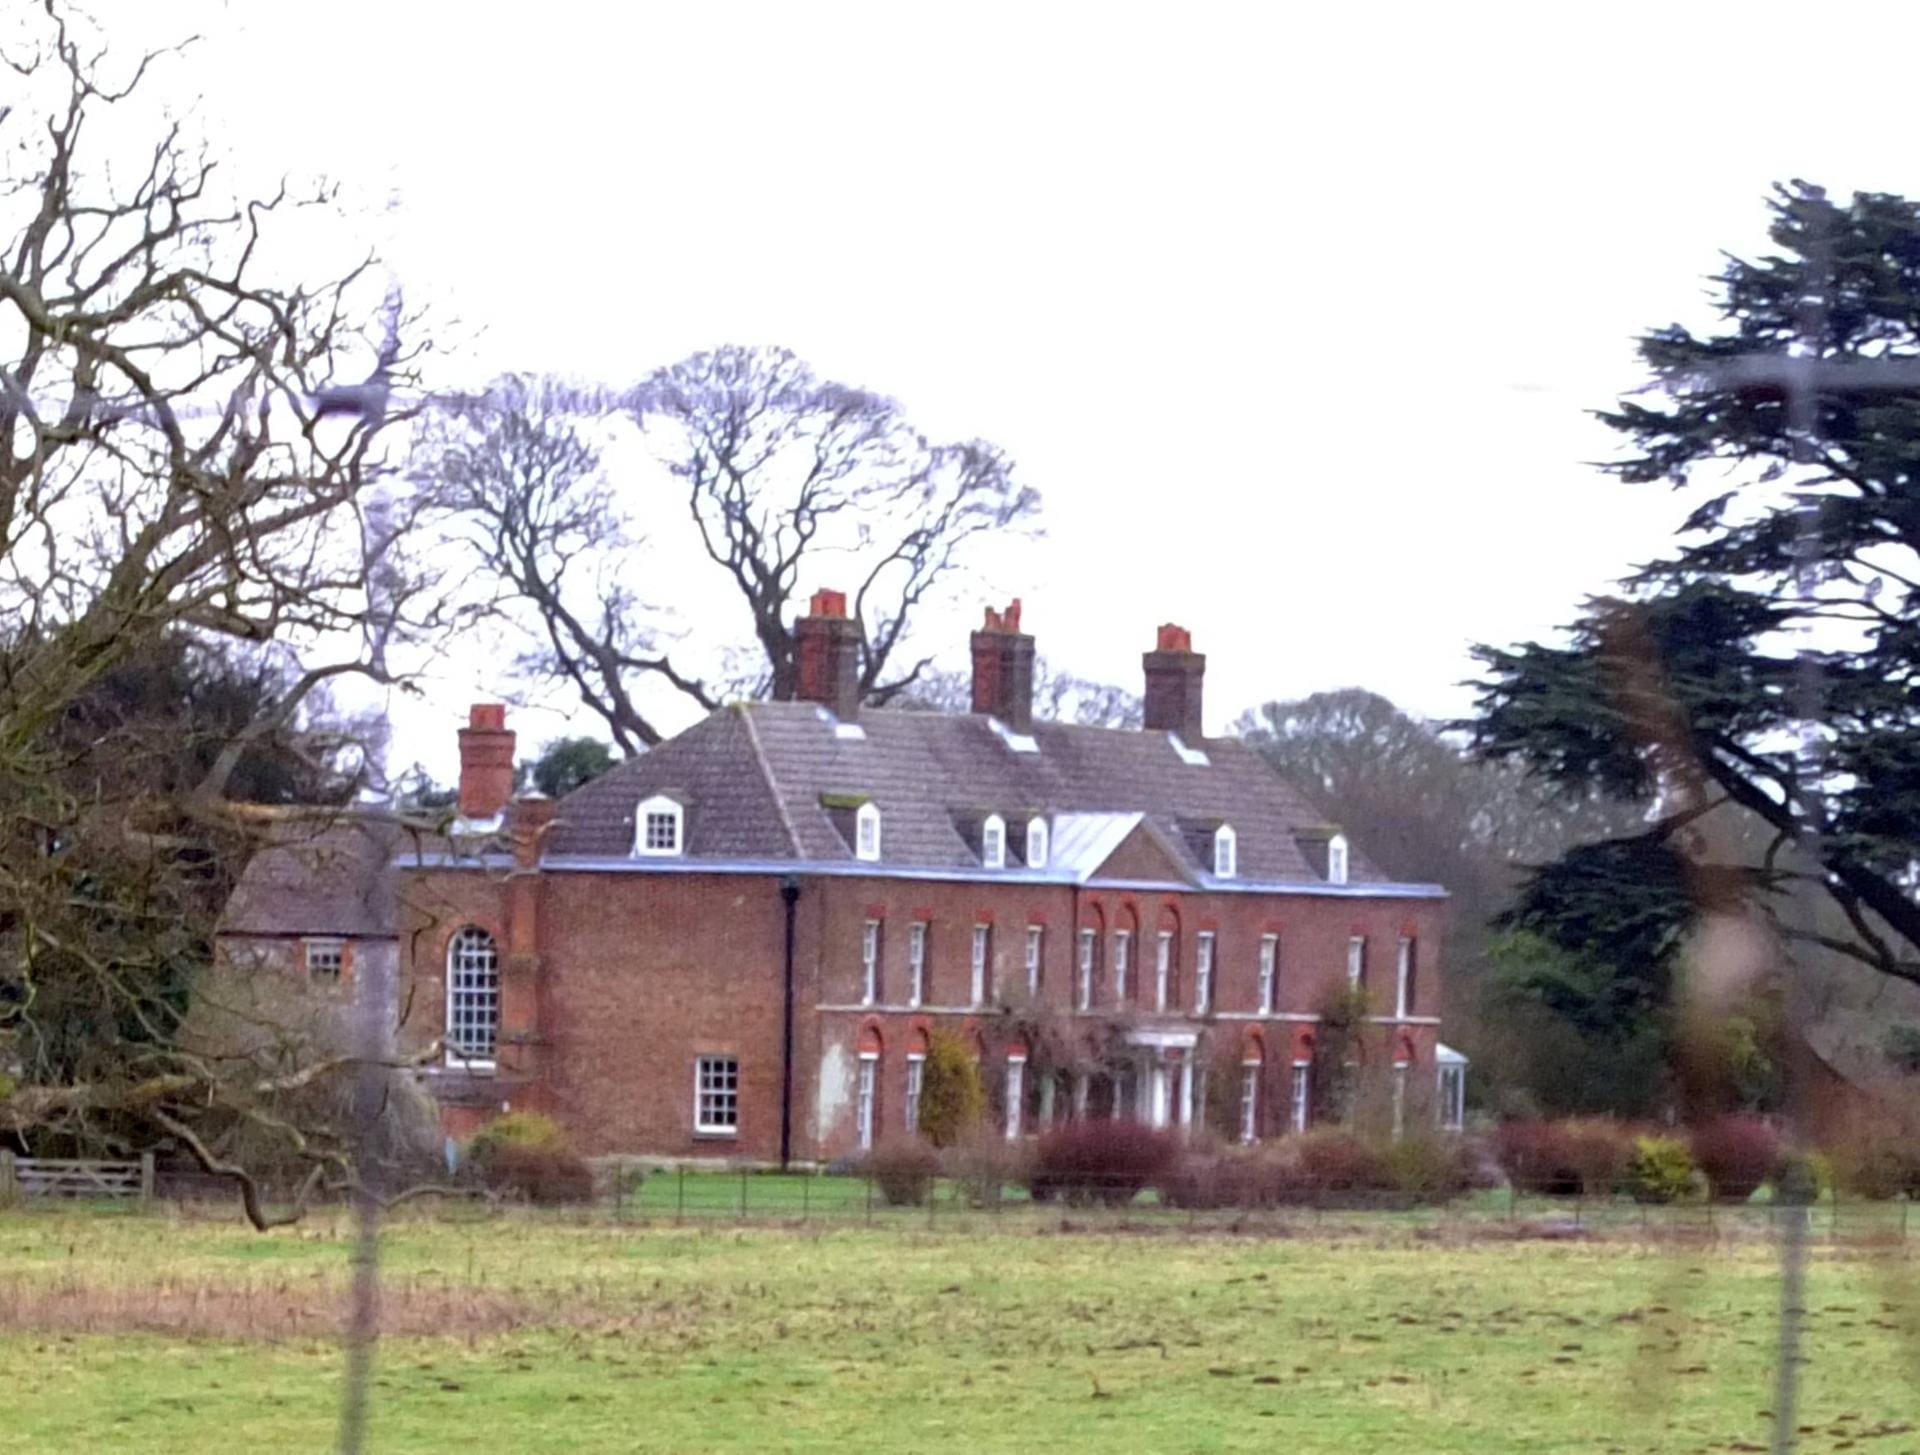 Anmer Hall: Das Gebäude liegt auf dem Gelände von Sandringham. Es ist der Landsitz von William und Kate. Die Queen hat es dem Paar Berichten zufolge zur Hochzeit geschenkt. Es befindet sich im privaten Besitz der Mountbatten-Windsors.